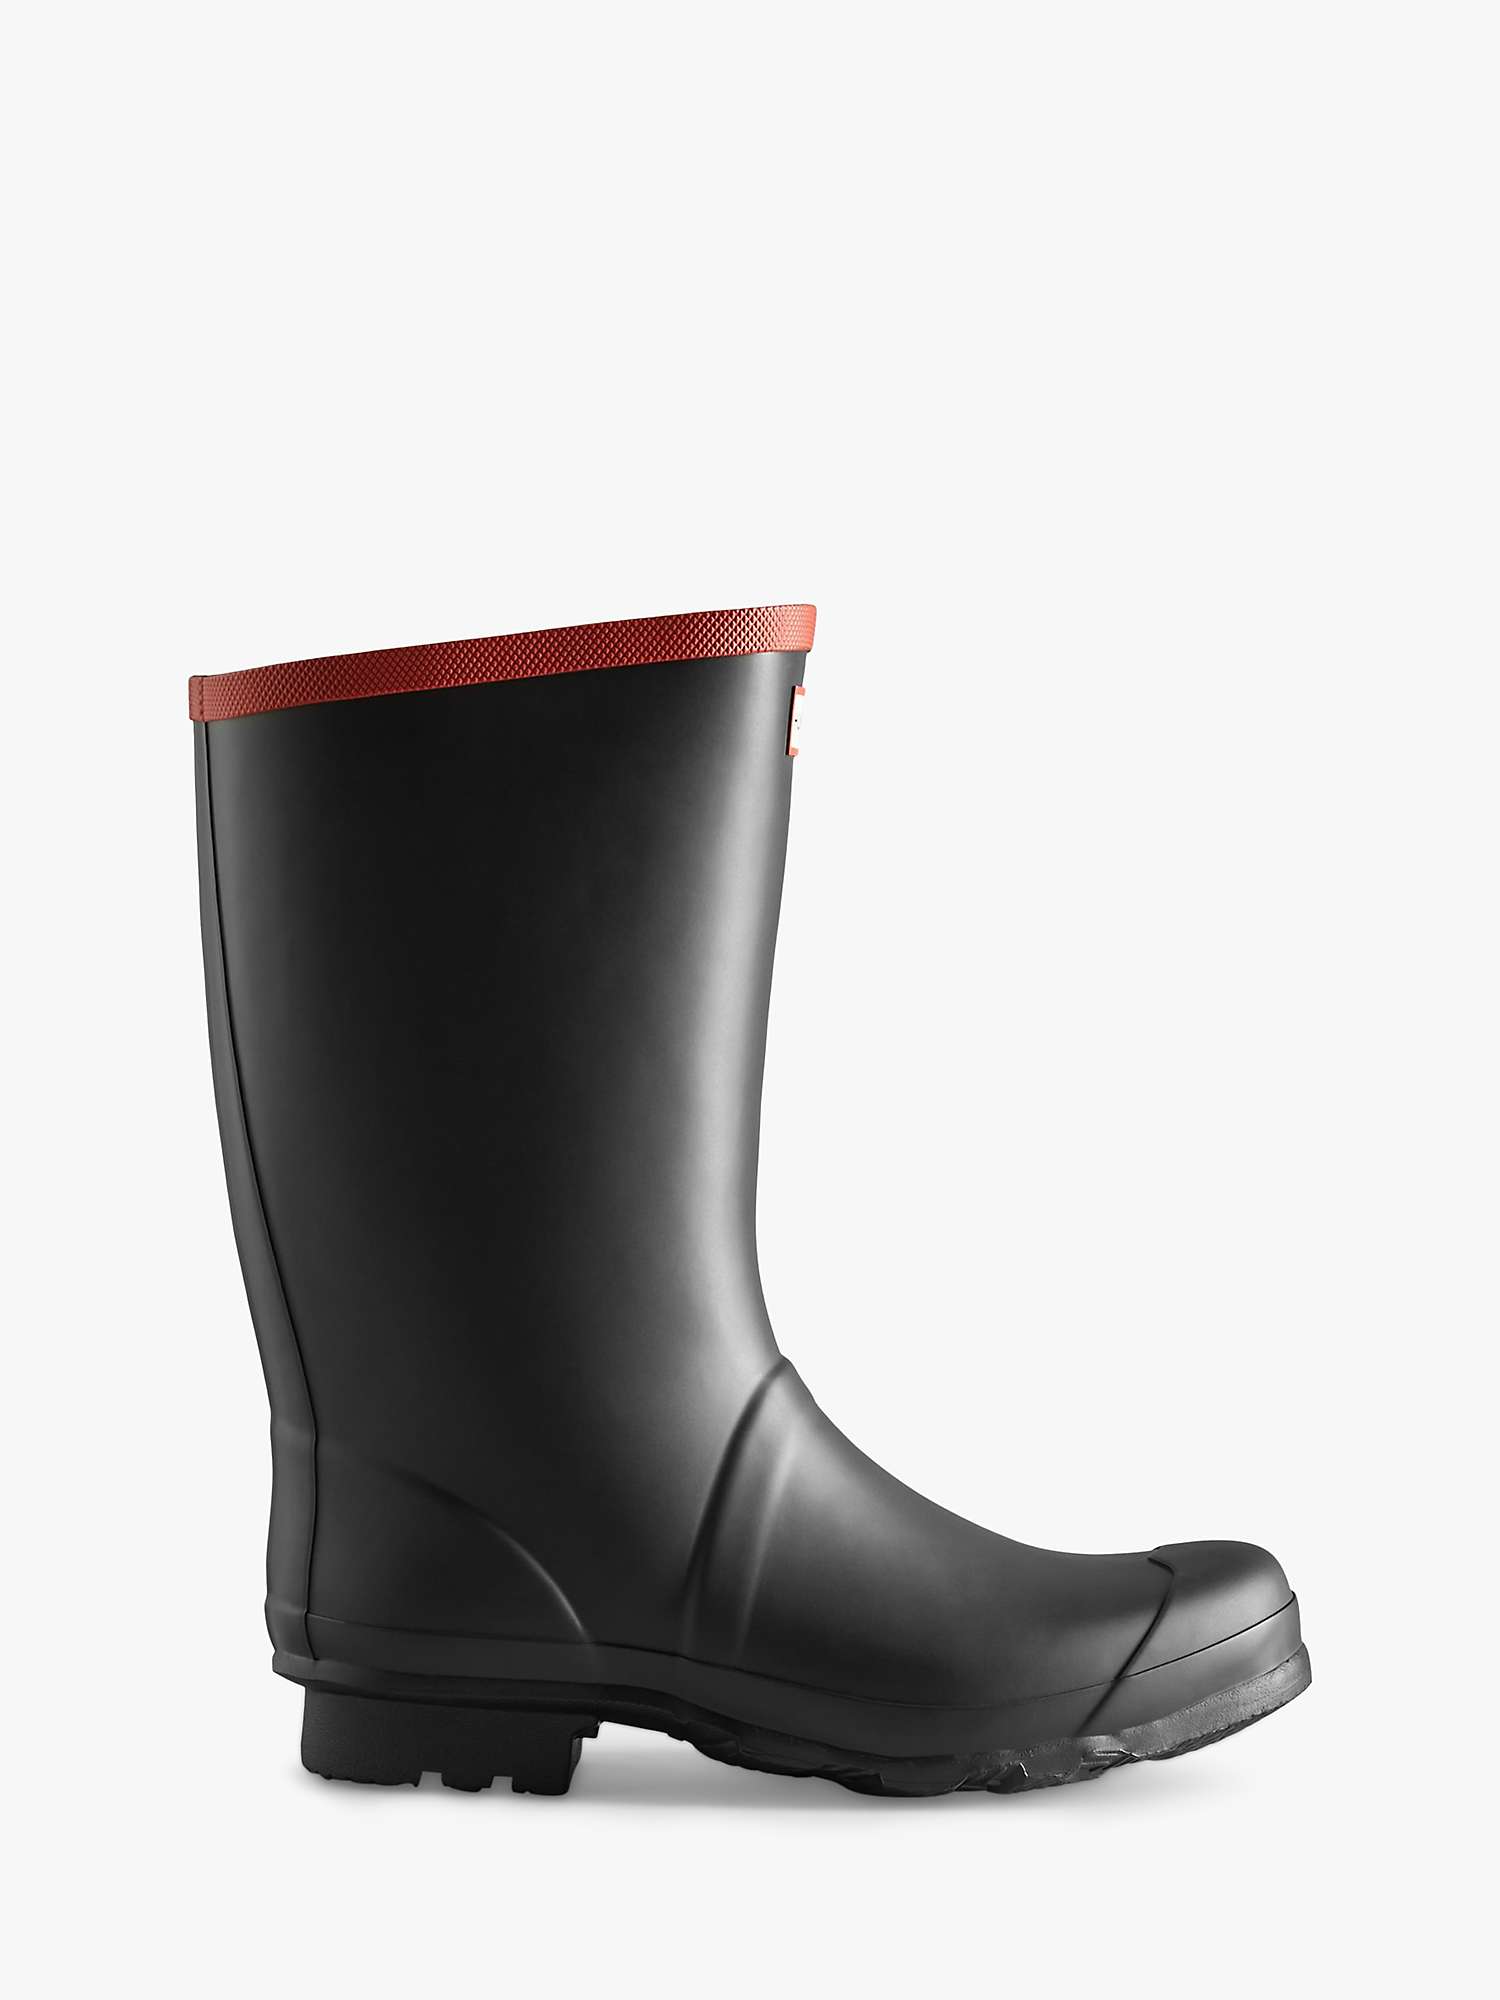 Buy Hunter Argyll Short Knee Wellington Boots, Black Online at johnlewis.com